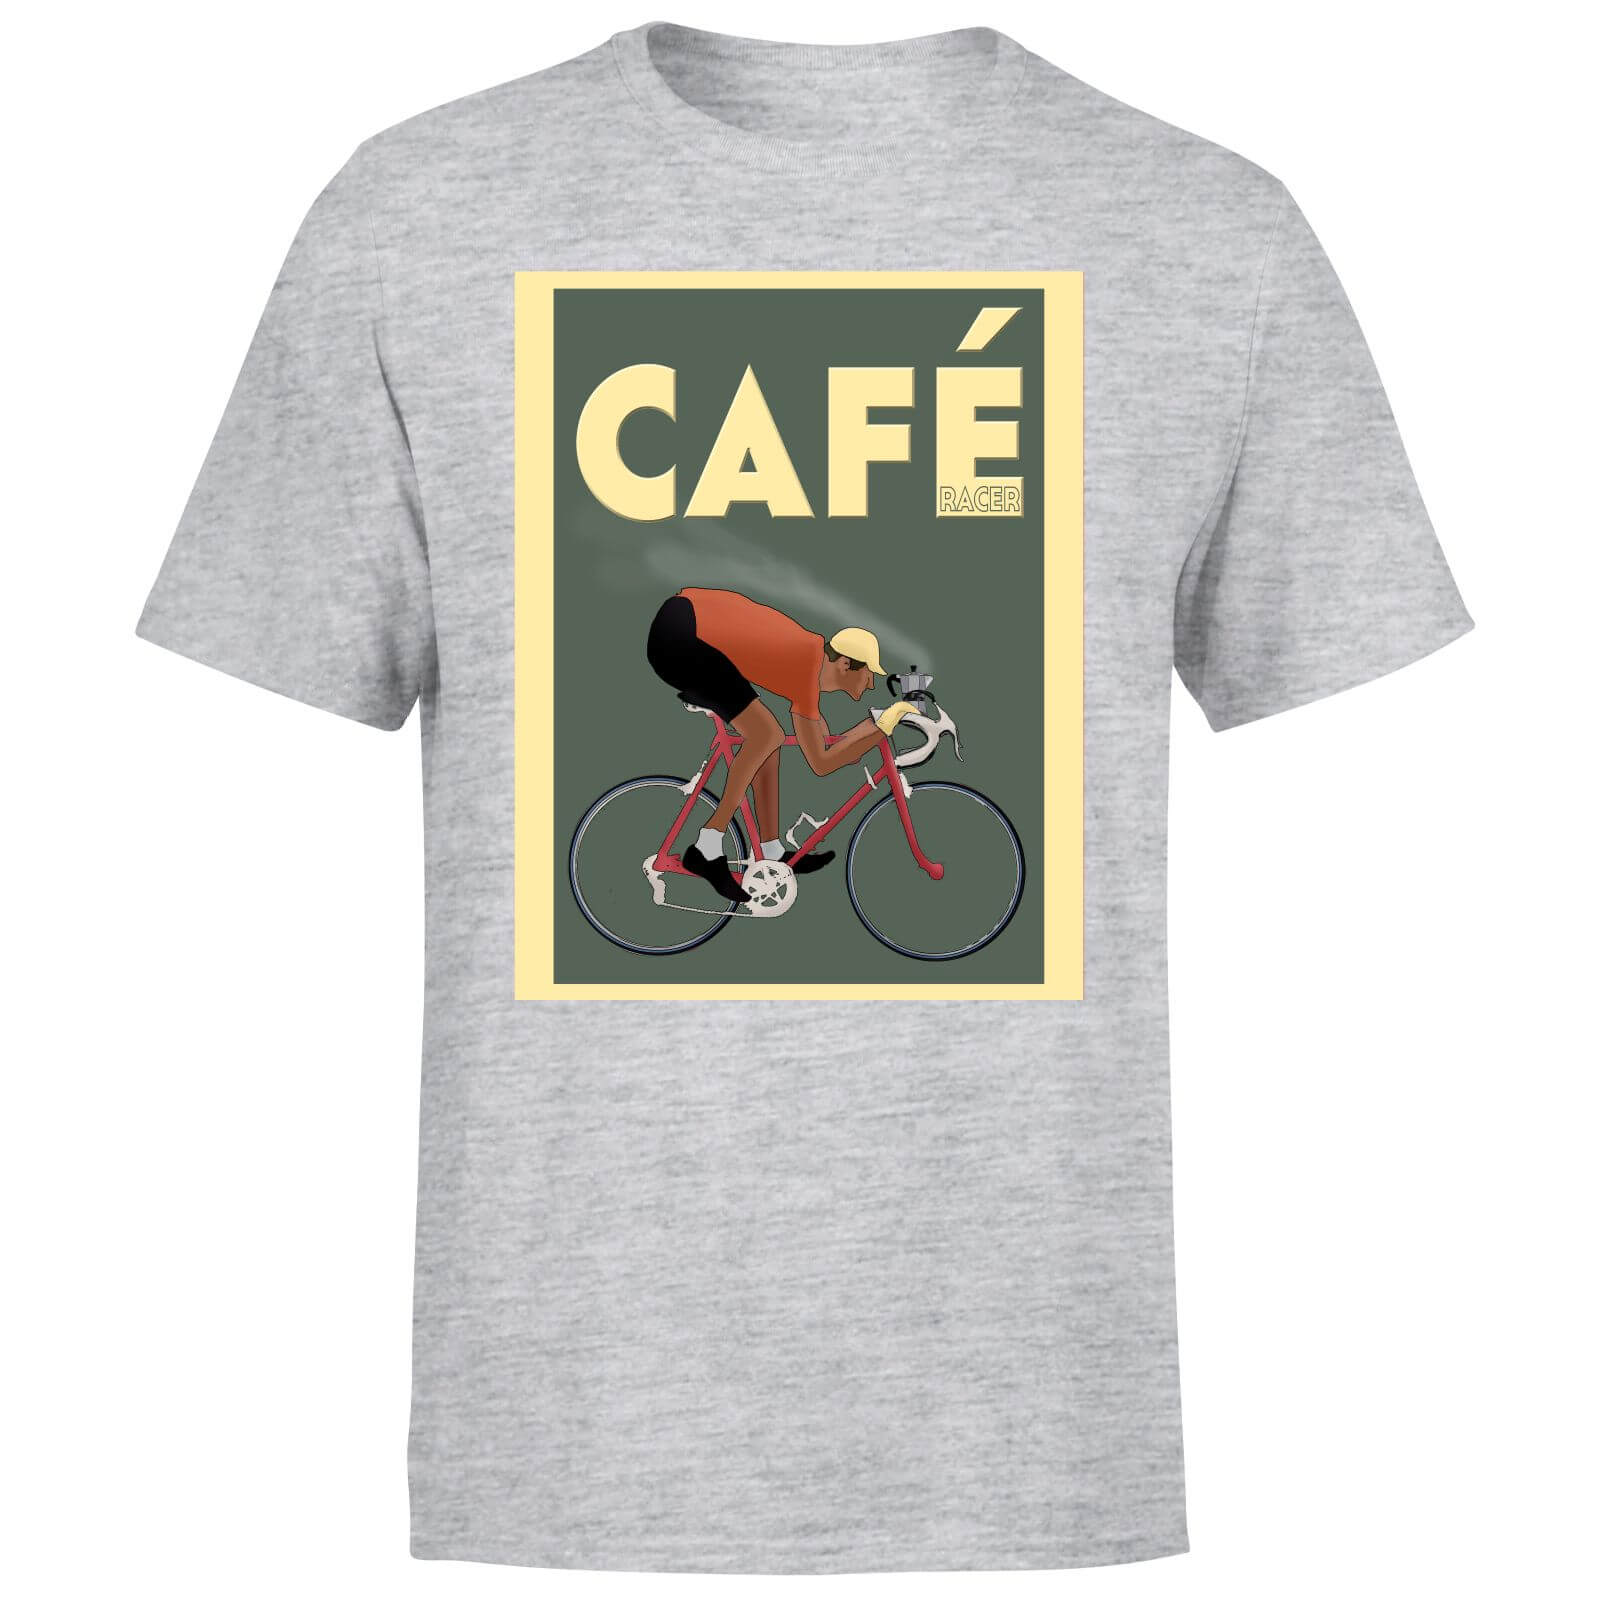 Cafe Racer Men's T-Shirt - Grey - S - Grey